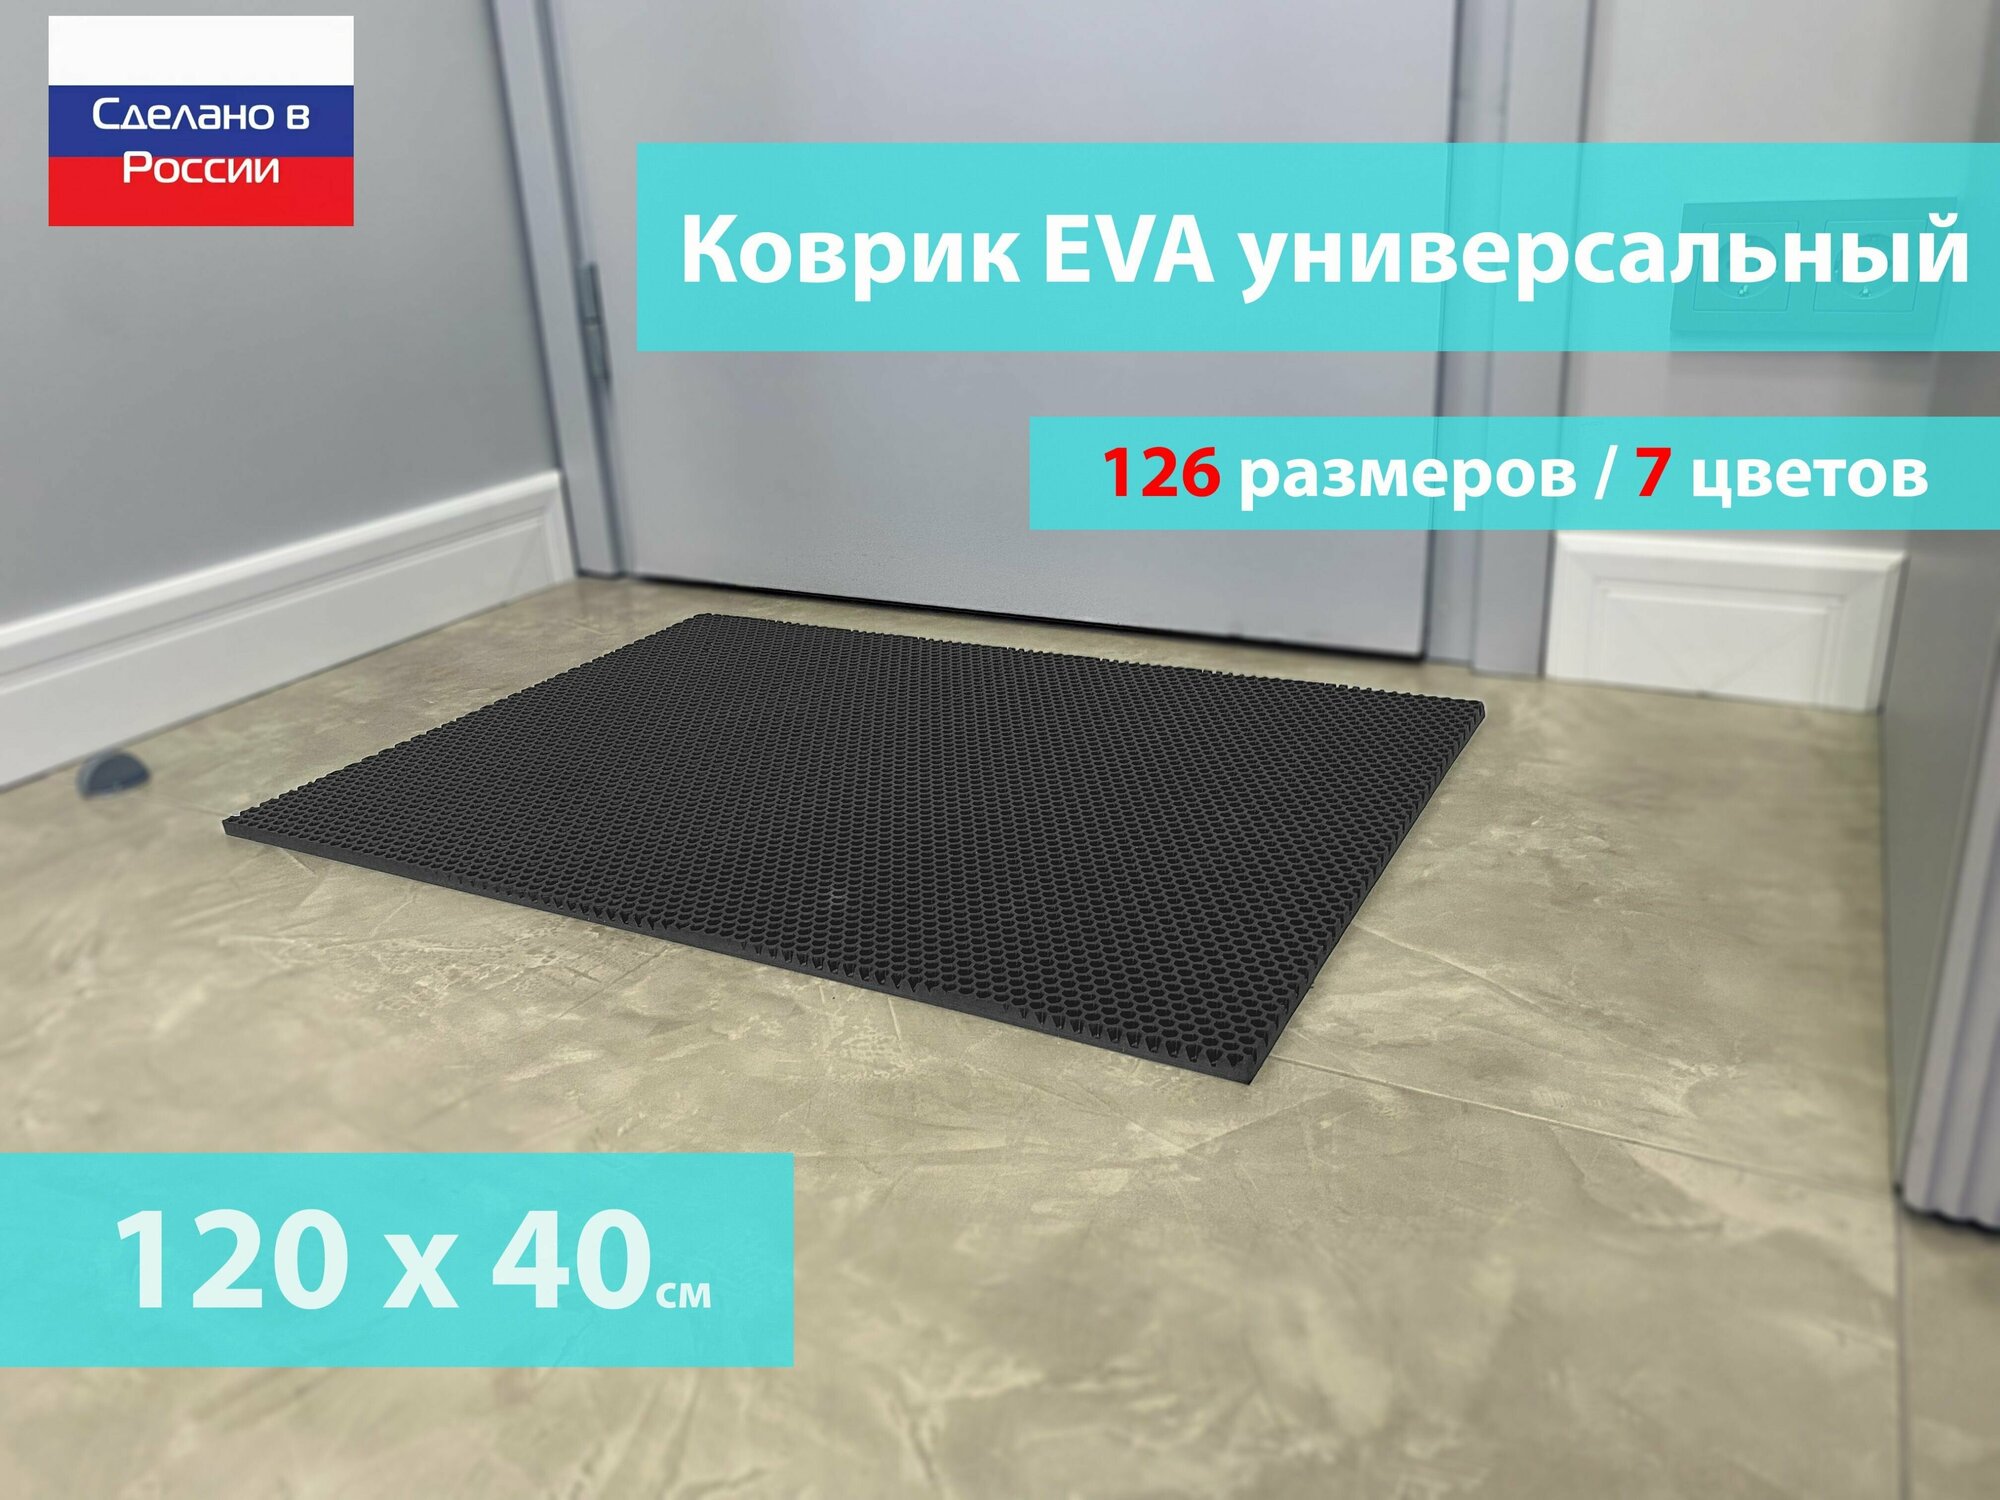 Коврик придверный EVA (ЕВА) в прихожую для обуви / Ковер ЭВА на пол перед дверью/ серый / размер 120 х 40 см